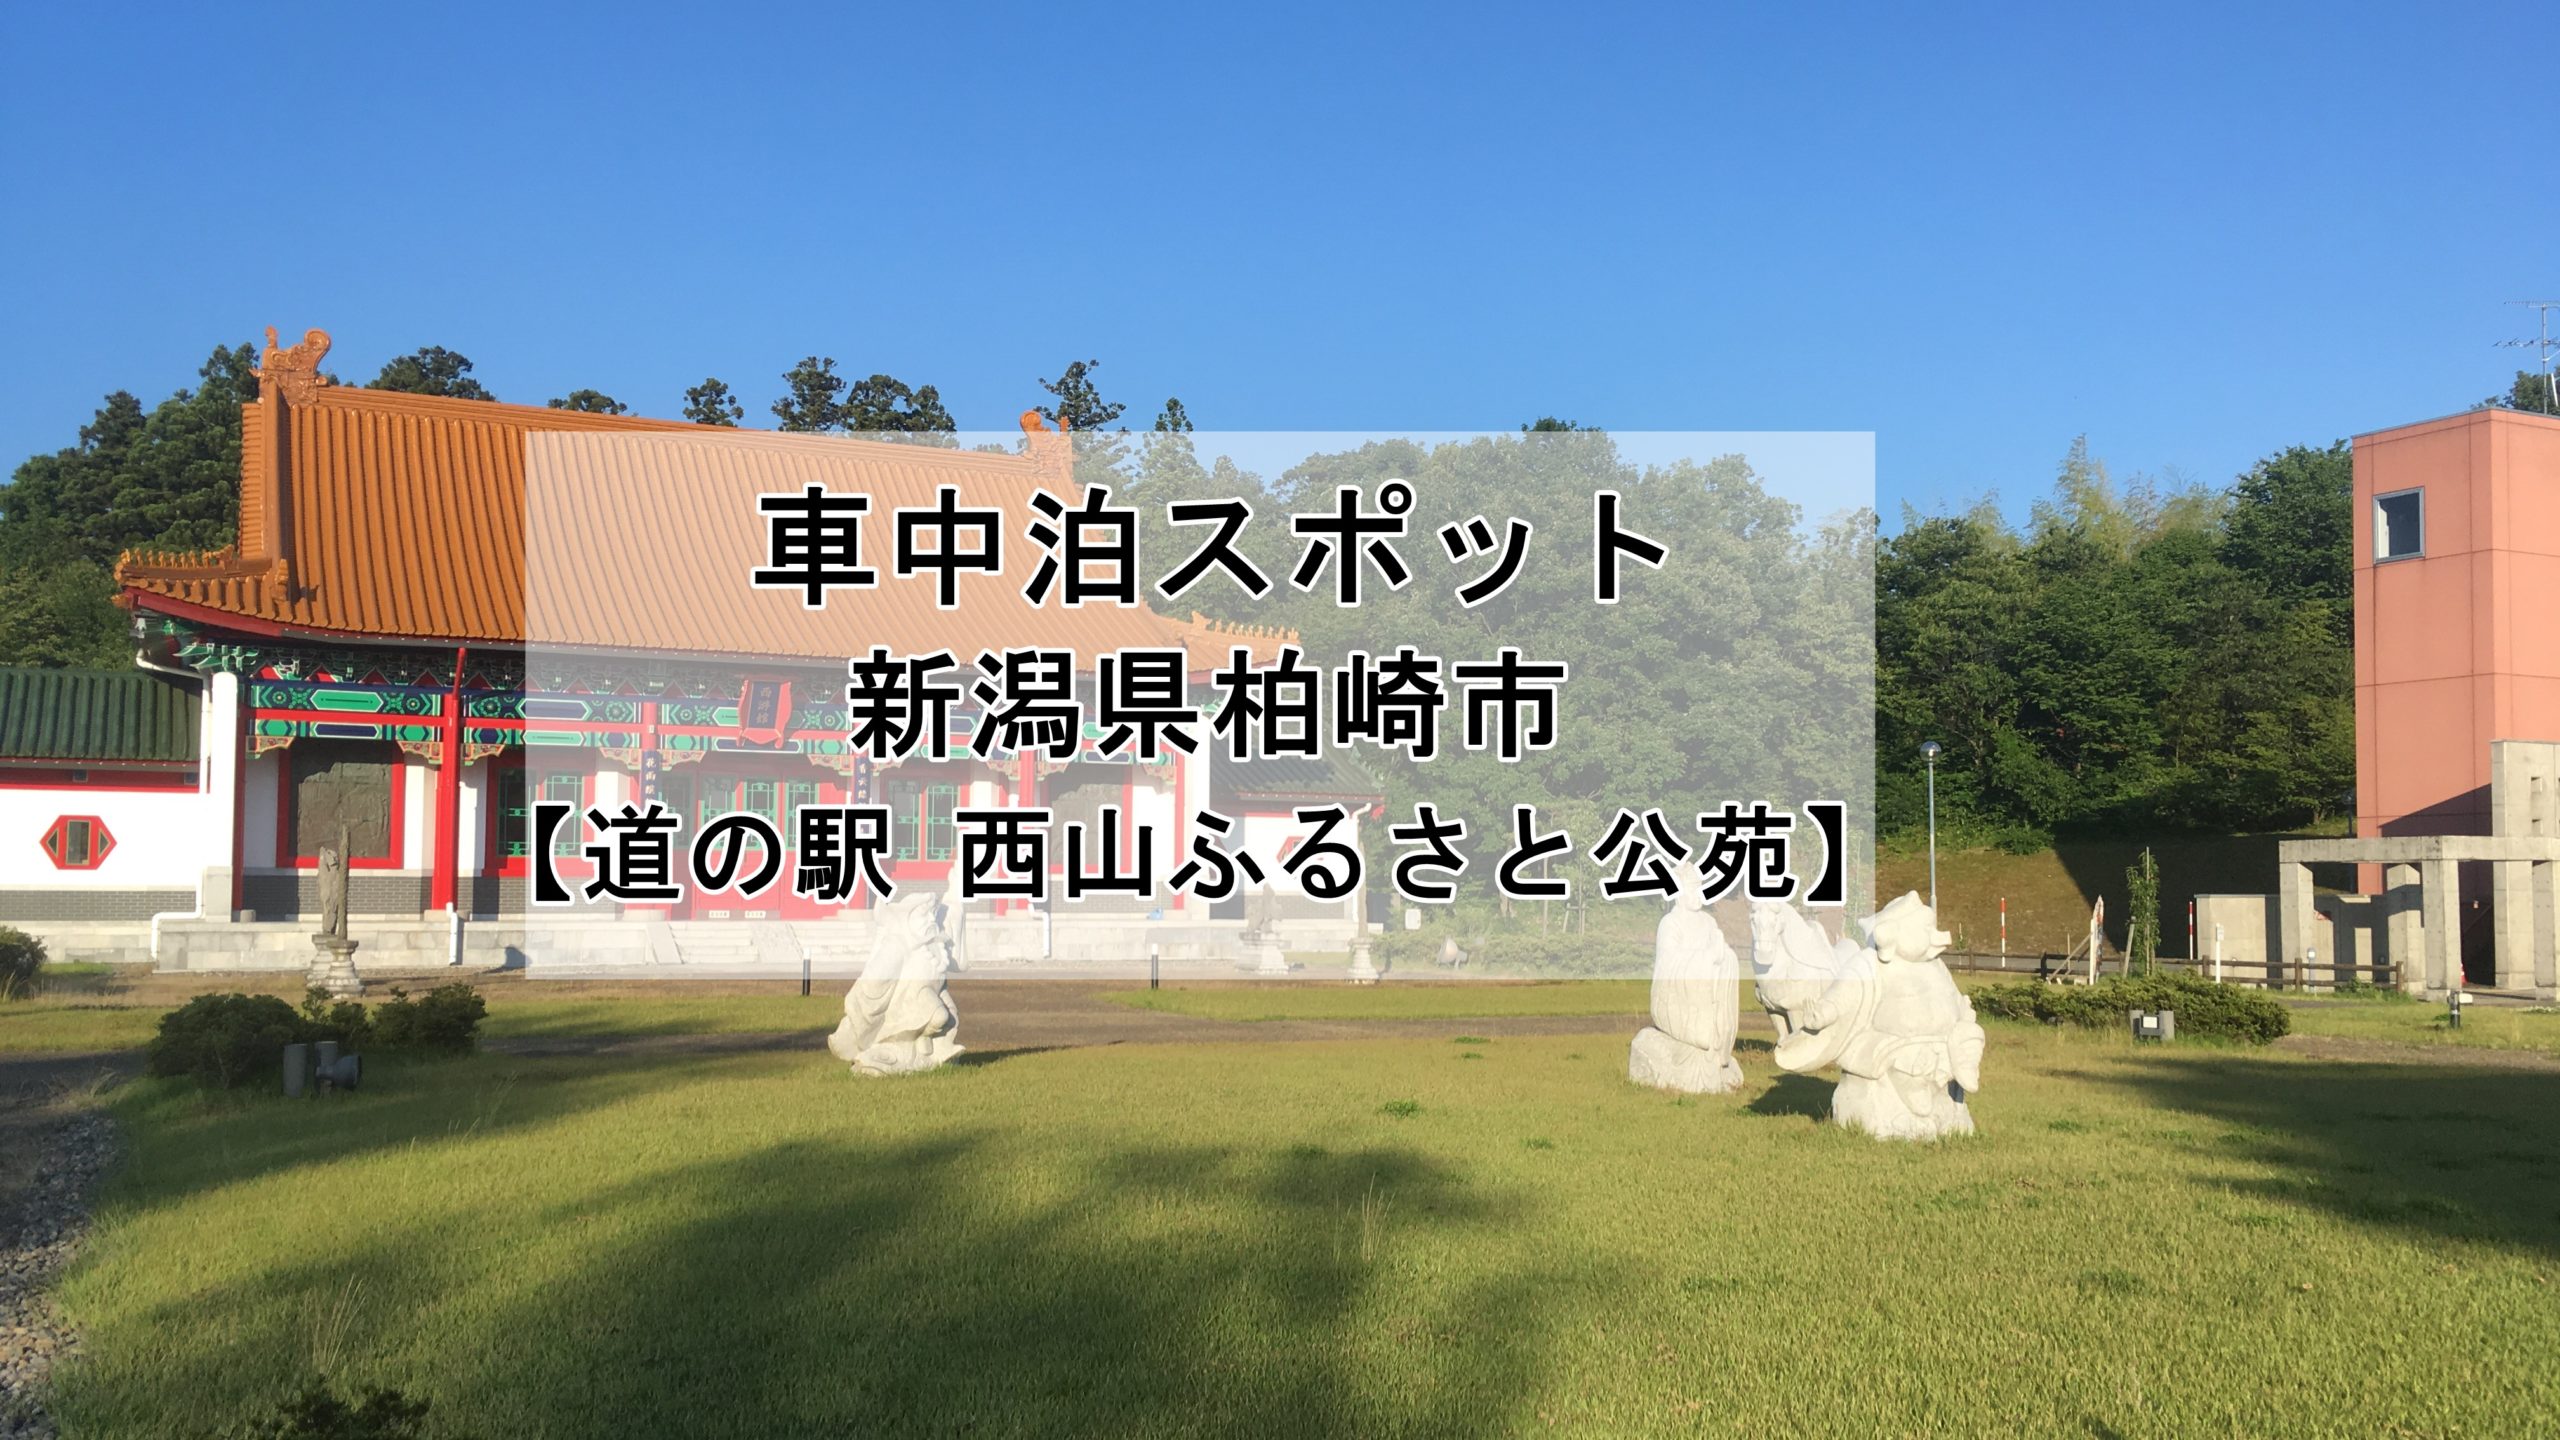 新潟県 道の駅 西山ふるさと公苑 での車中泊はオススメしません 車中泊女子 初心者向けバンライフブログ